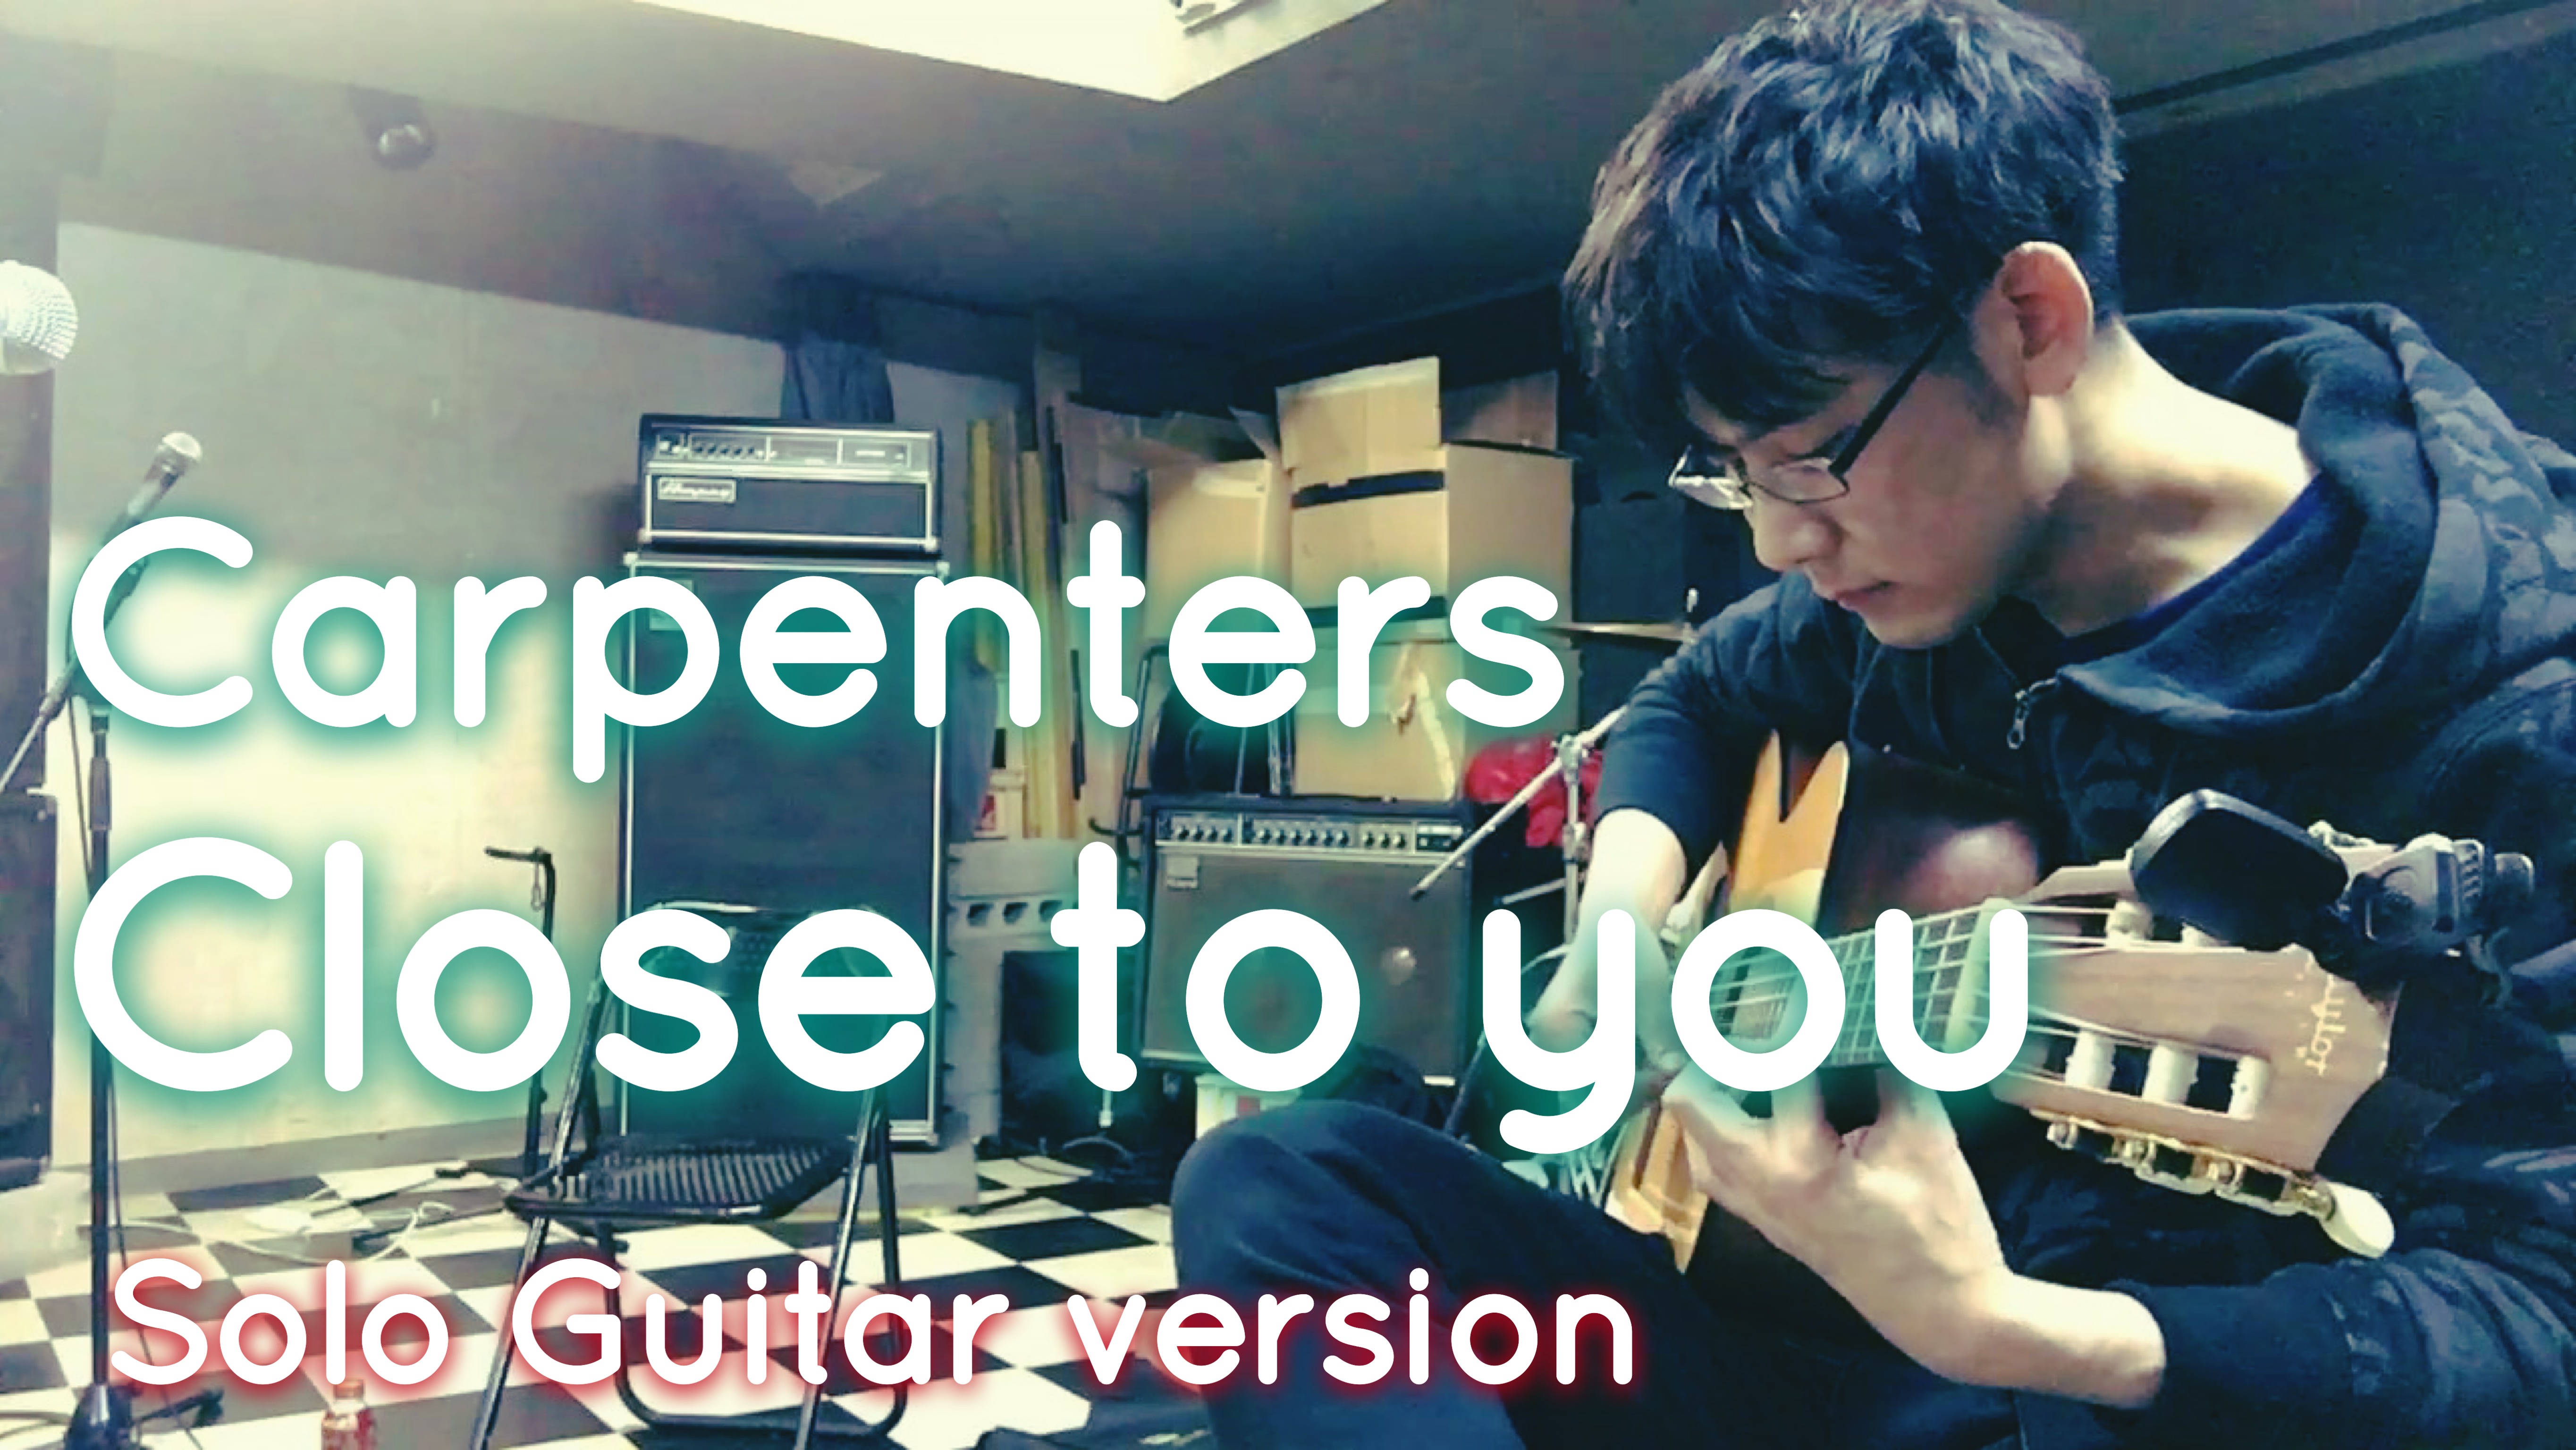 Close To You 横田明紀男をソロギターでかっこよく弾いてみた のび太のギターブログ